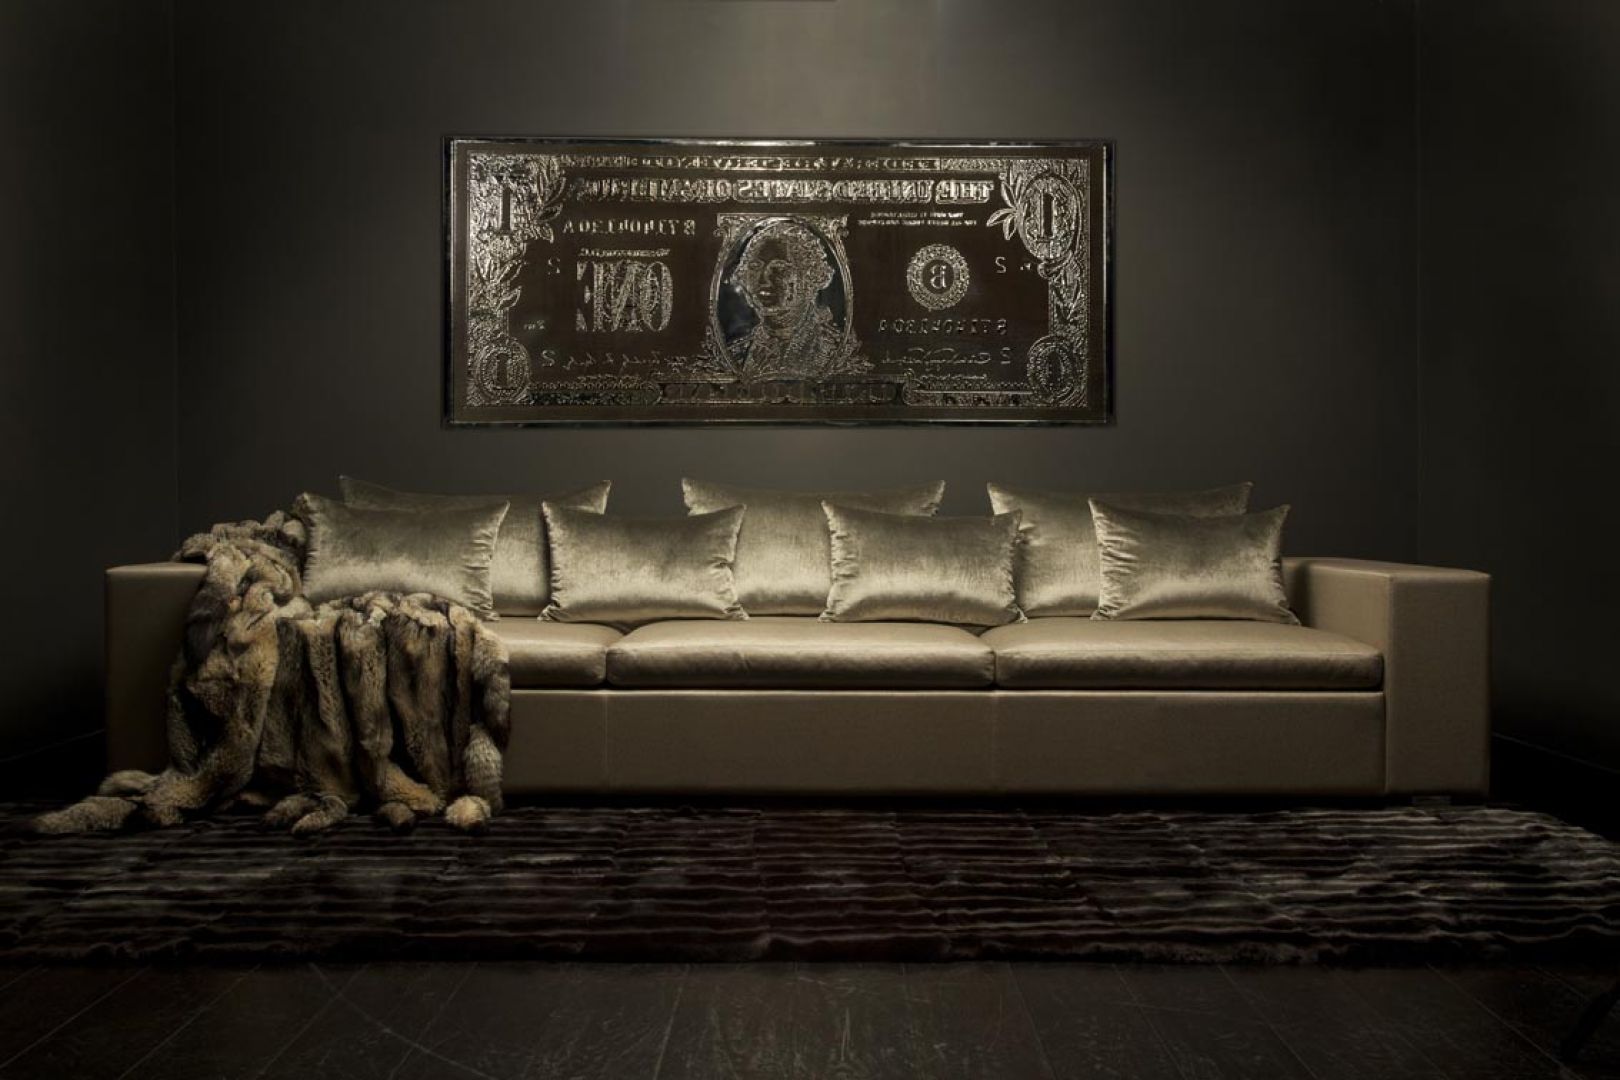 Meble projektu Erica Kuster są niezwykle eleganckie. Ta złota sofa wygląda jakby była pokryta prawdziwym kruszcem. Fot. Eric Kuster